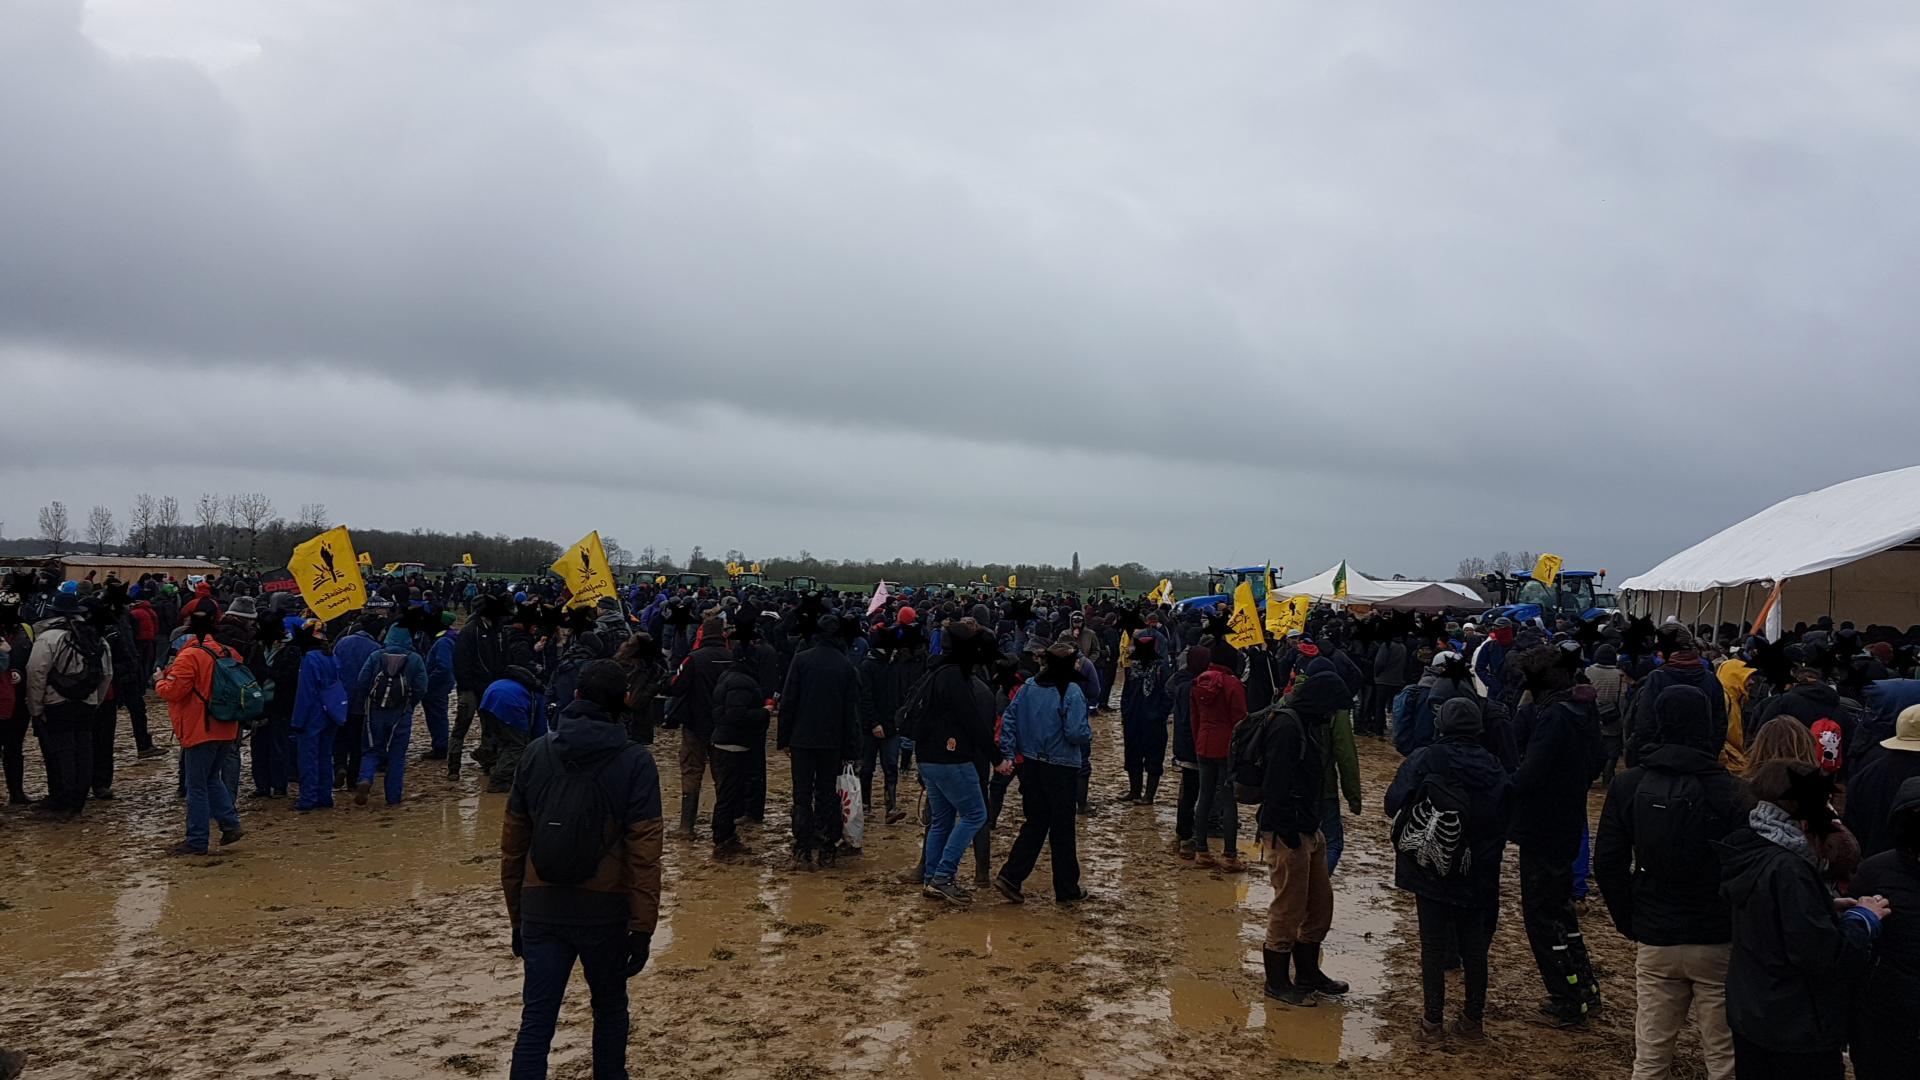 Le camp s'est réveillé ce matin dans la boue, après une nuit venteuse et humide, ce qui n'a pas empêché les gens de chanter des slogans dès le réveil !